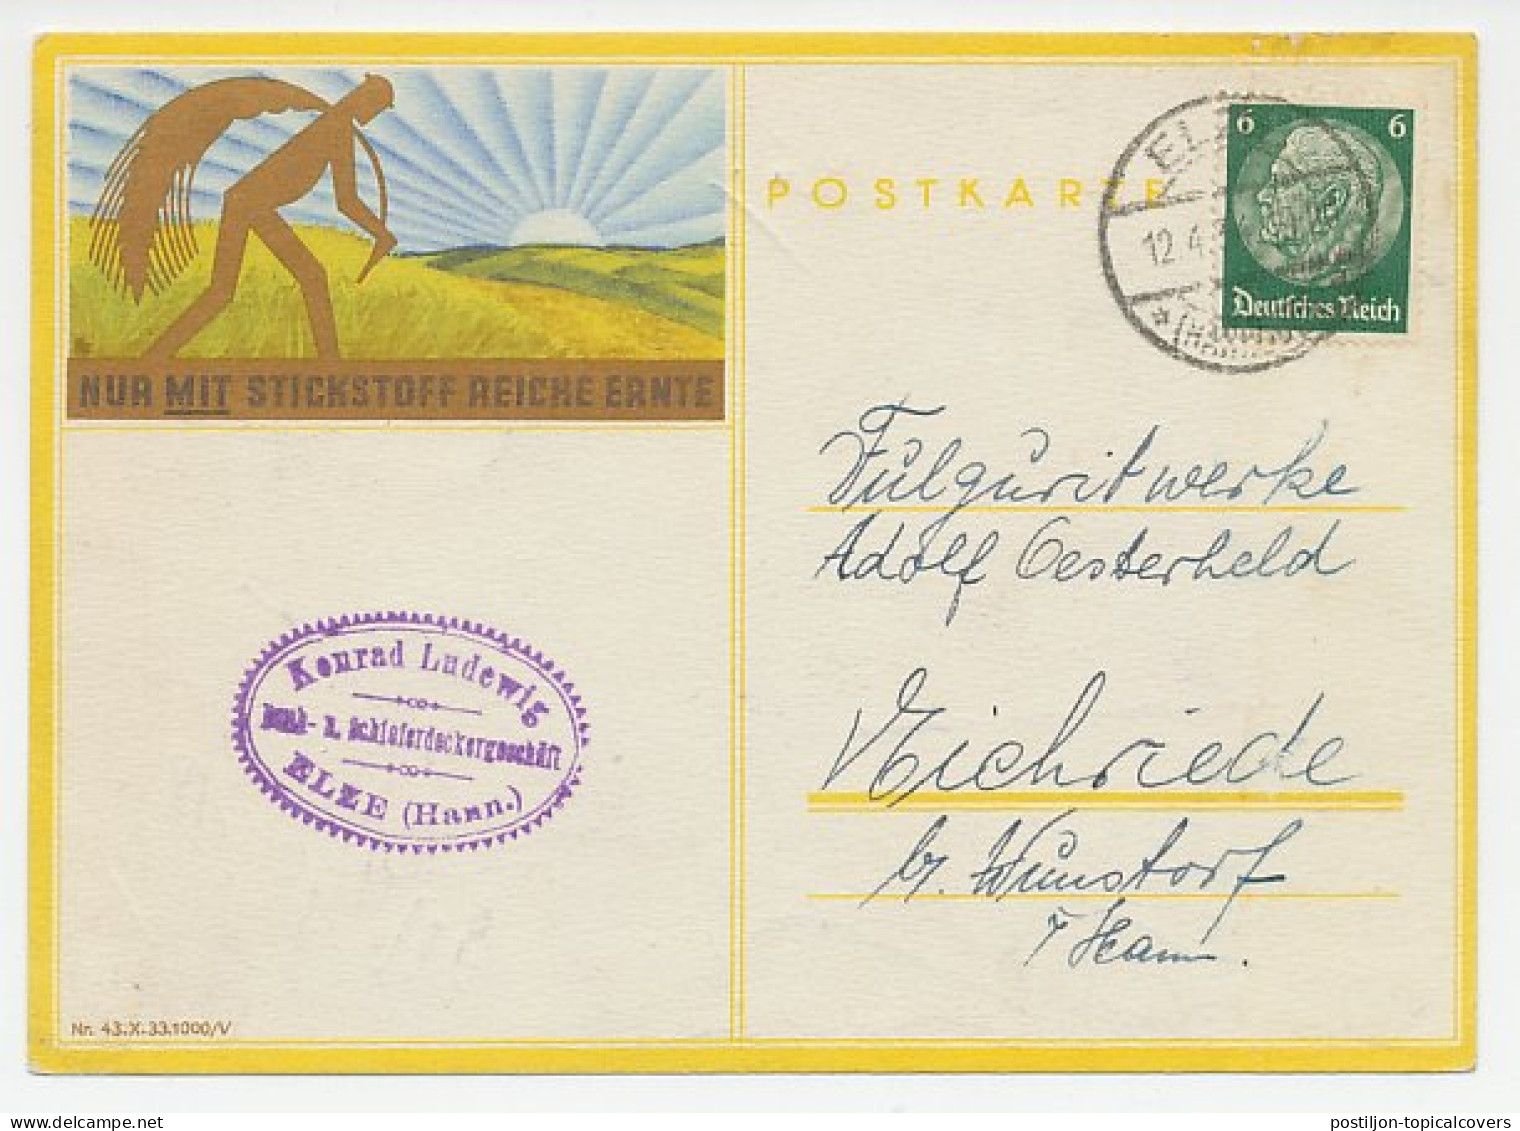 Illustrated Card Deutsches Reich / Germany 1934 Fertilizer - Mower - Nitrogen - Landwirtschaft